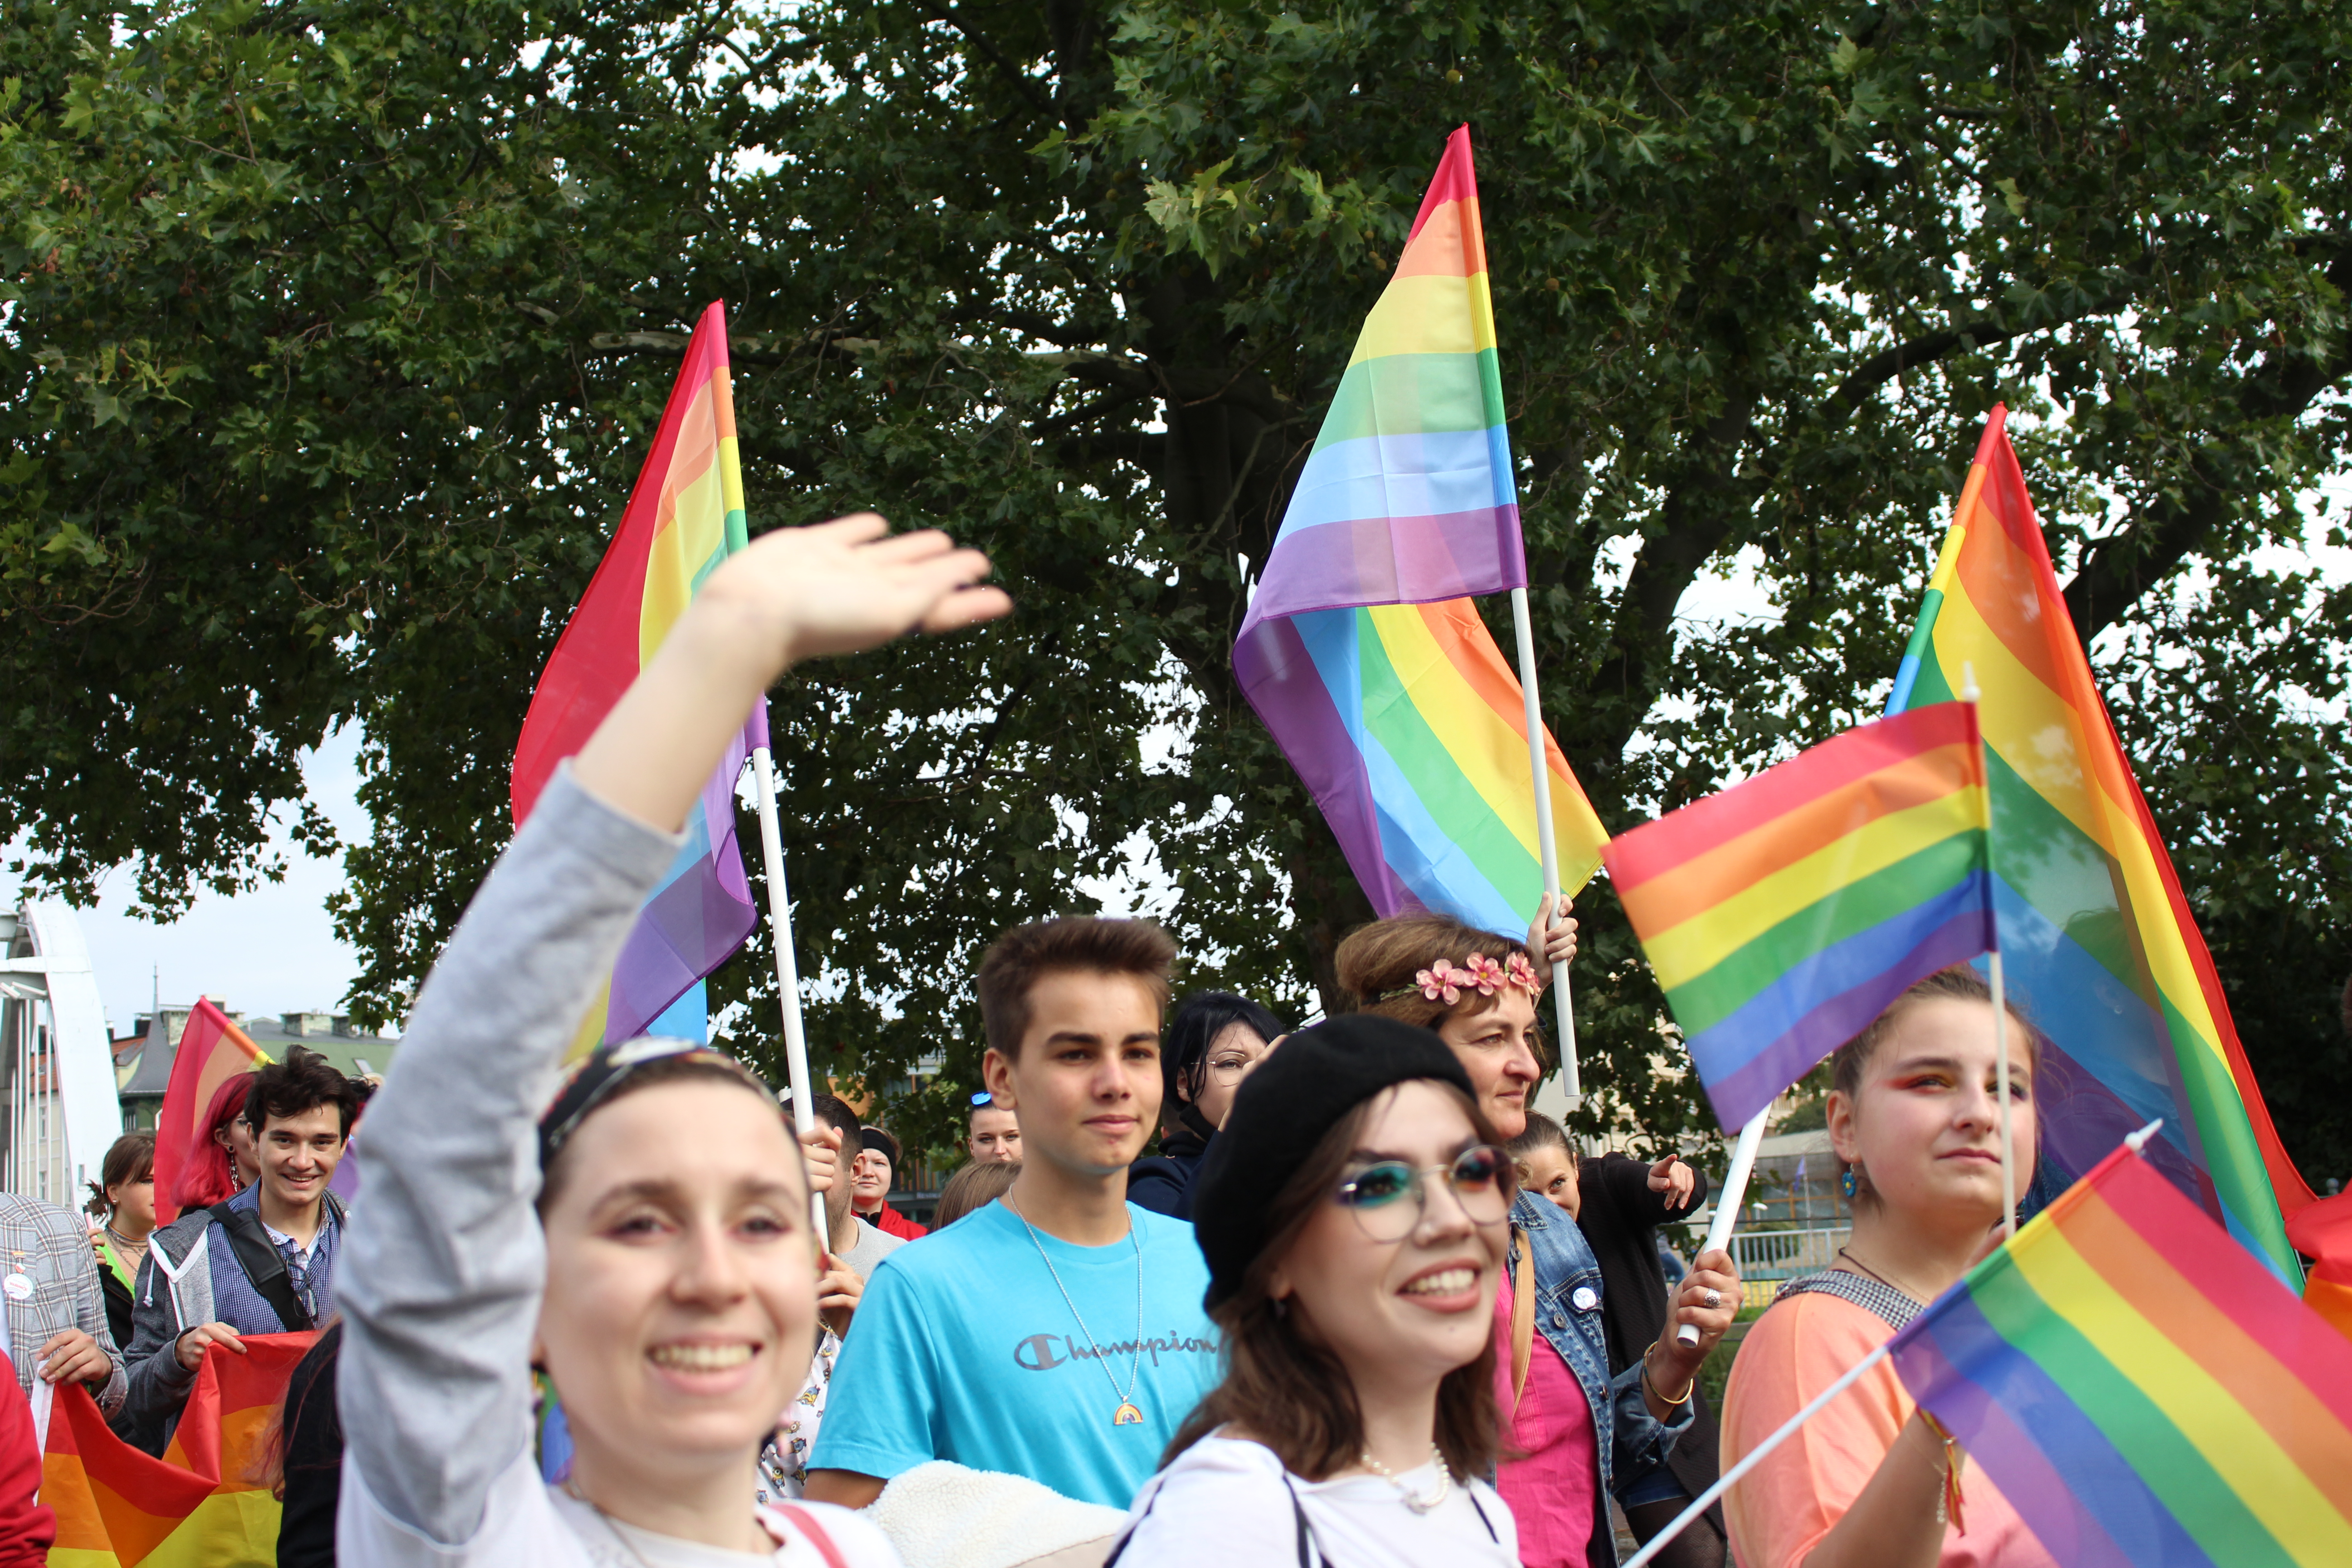 III Marsz Równości w Opolu. Demonstrowali homo i hetero, by pokazać niezgodę na złe traktowanie mniejszości LGBT. Galeria: dużo zdjęć